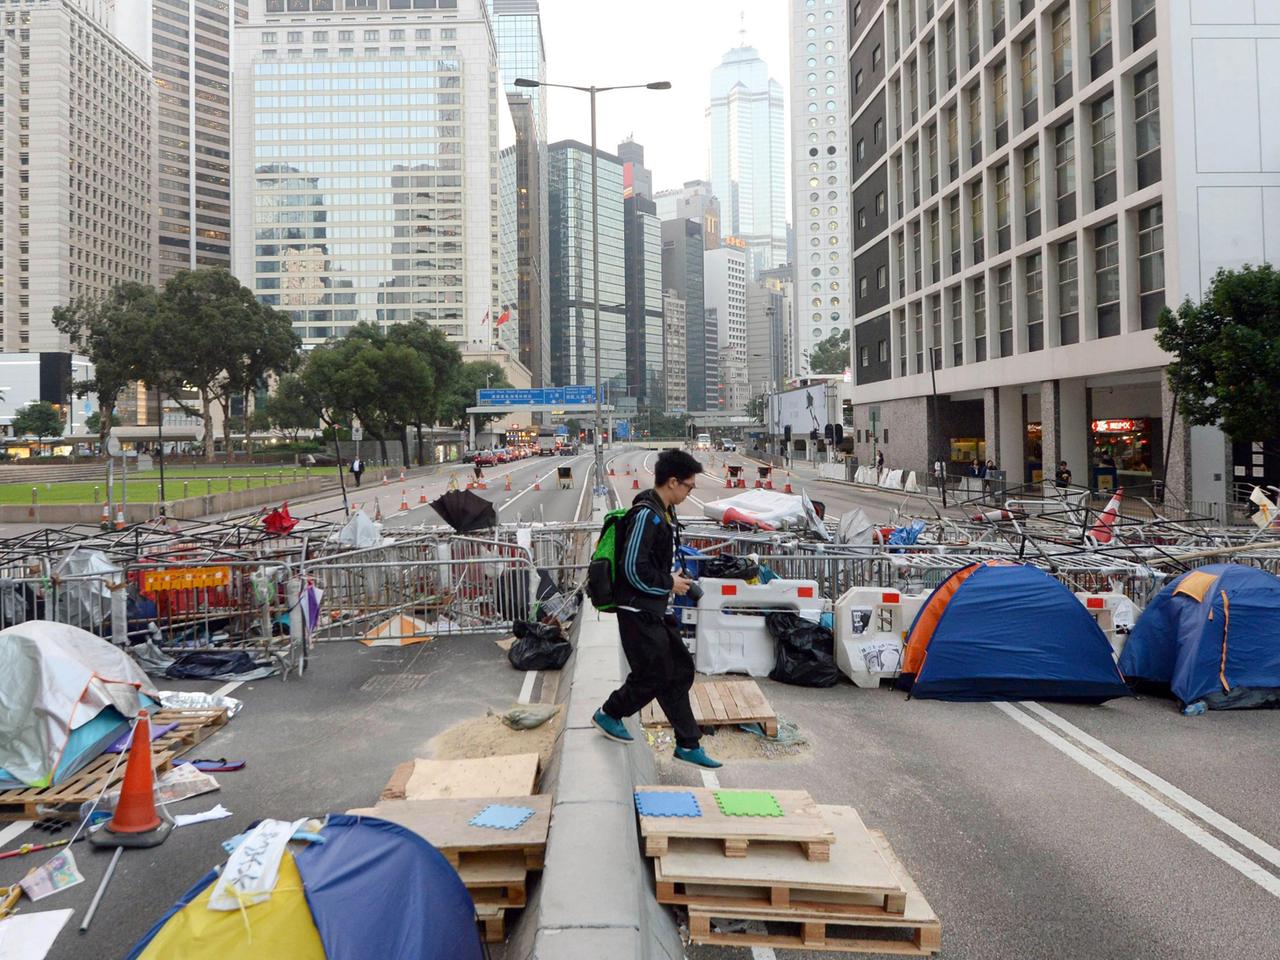 Metallzäune, Paletten und Zelte blockieren eine sechsspurige Straße zwischen Hochhäusern.